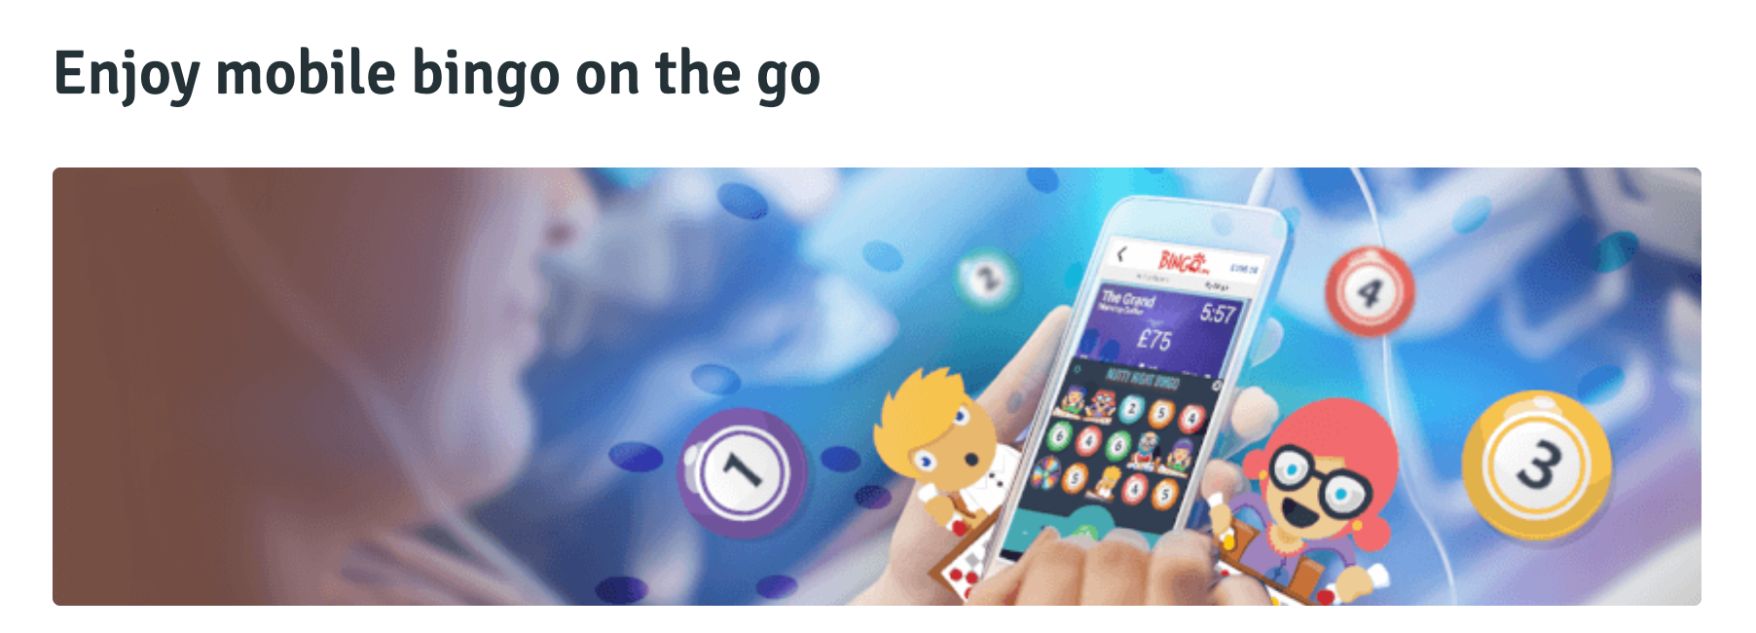 bingo.com mobile sites